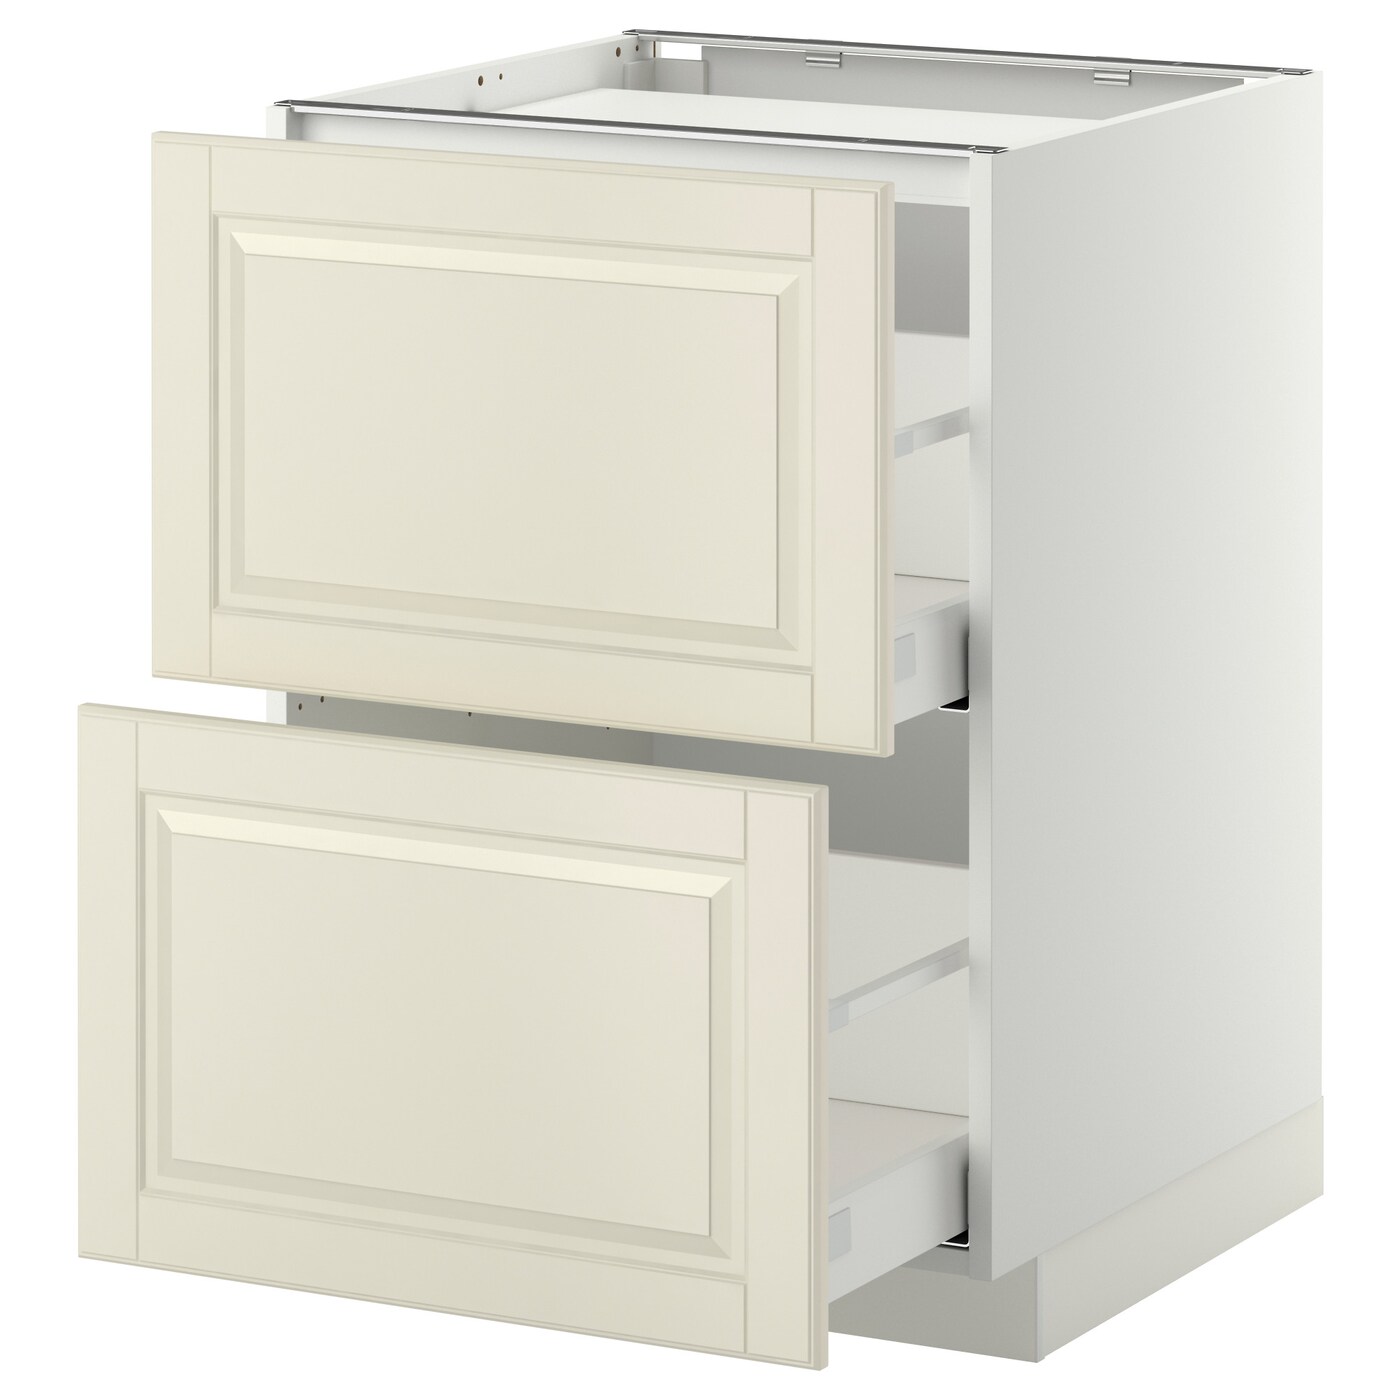 Напольный шкаф - METOD / MAXIMERA IKEA/ МЕТОД/ МАКСИМЕРА ИКЕА,  60х88 см, белый/светло-бежевый